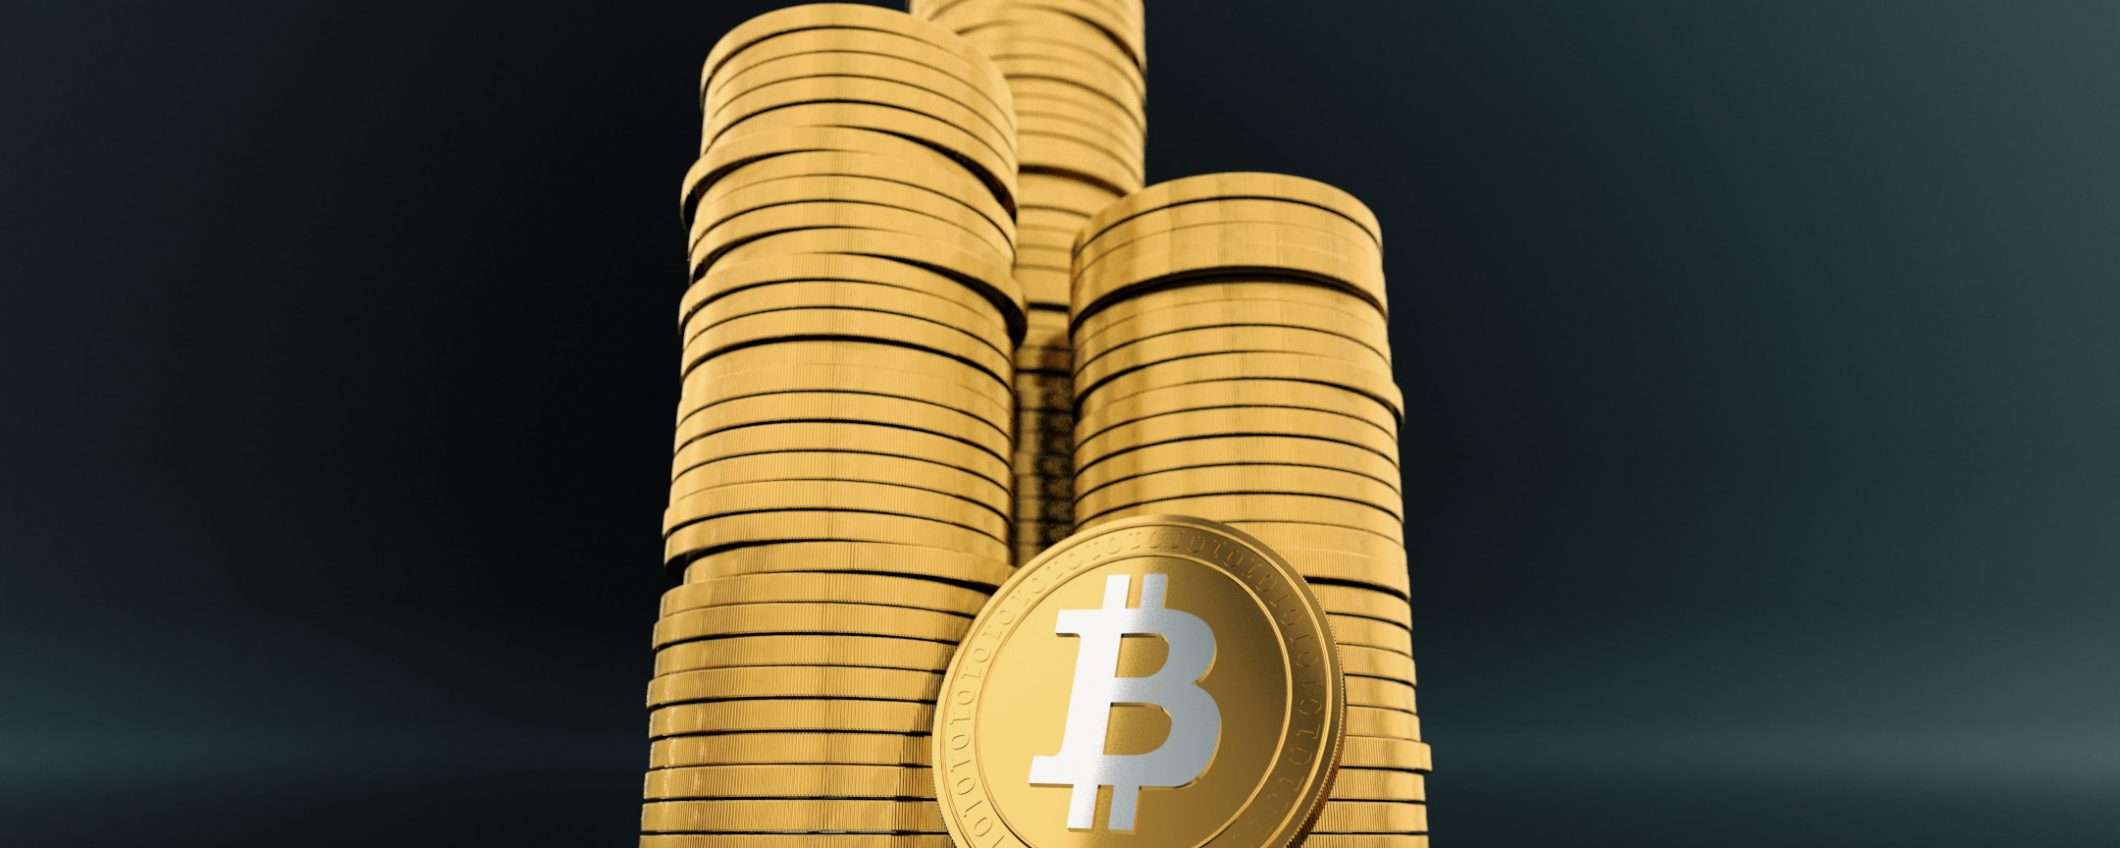 Bitcoin: è boom e il prezzo è destinato a crescere